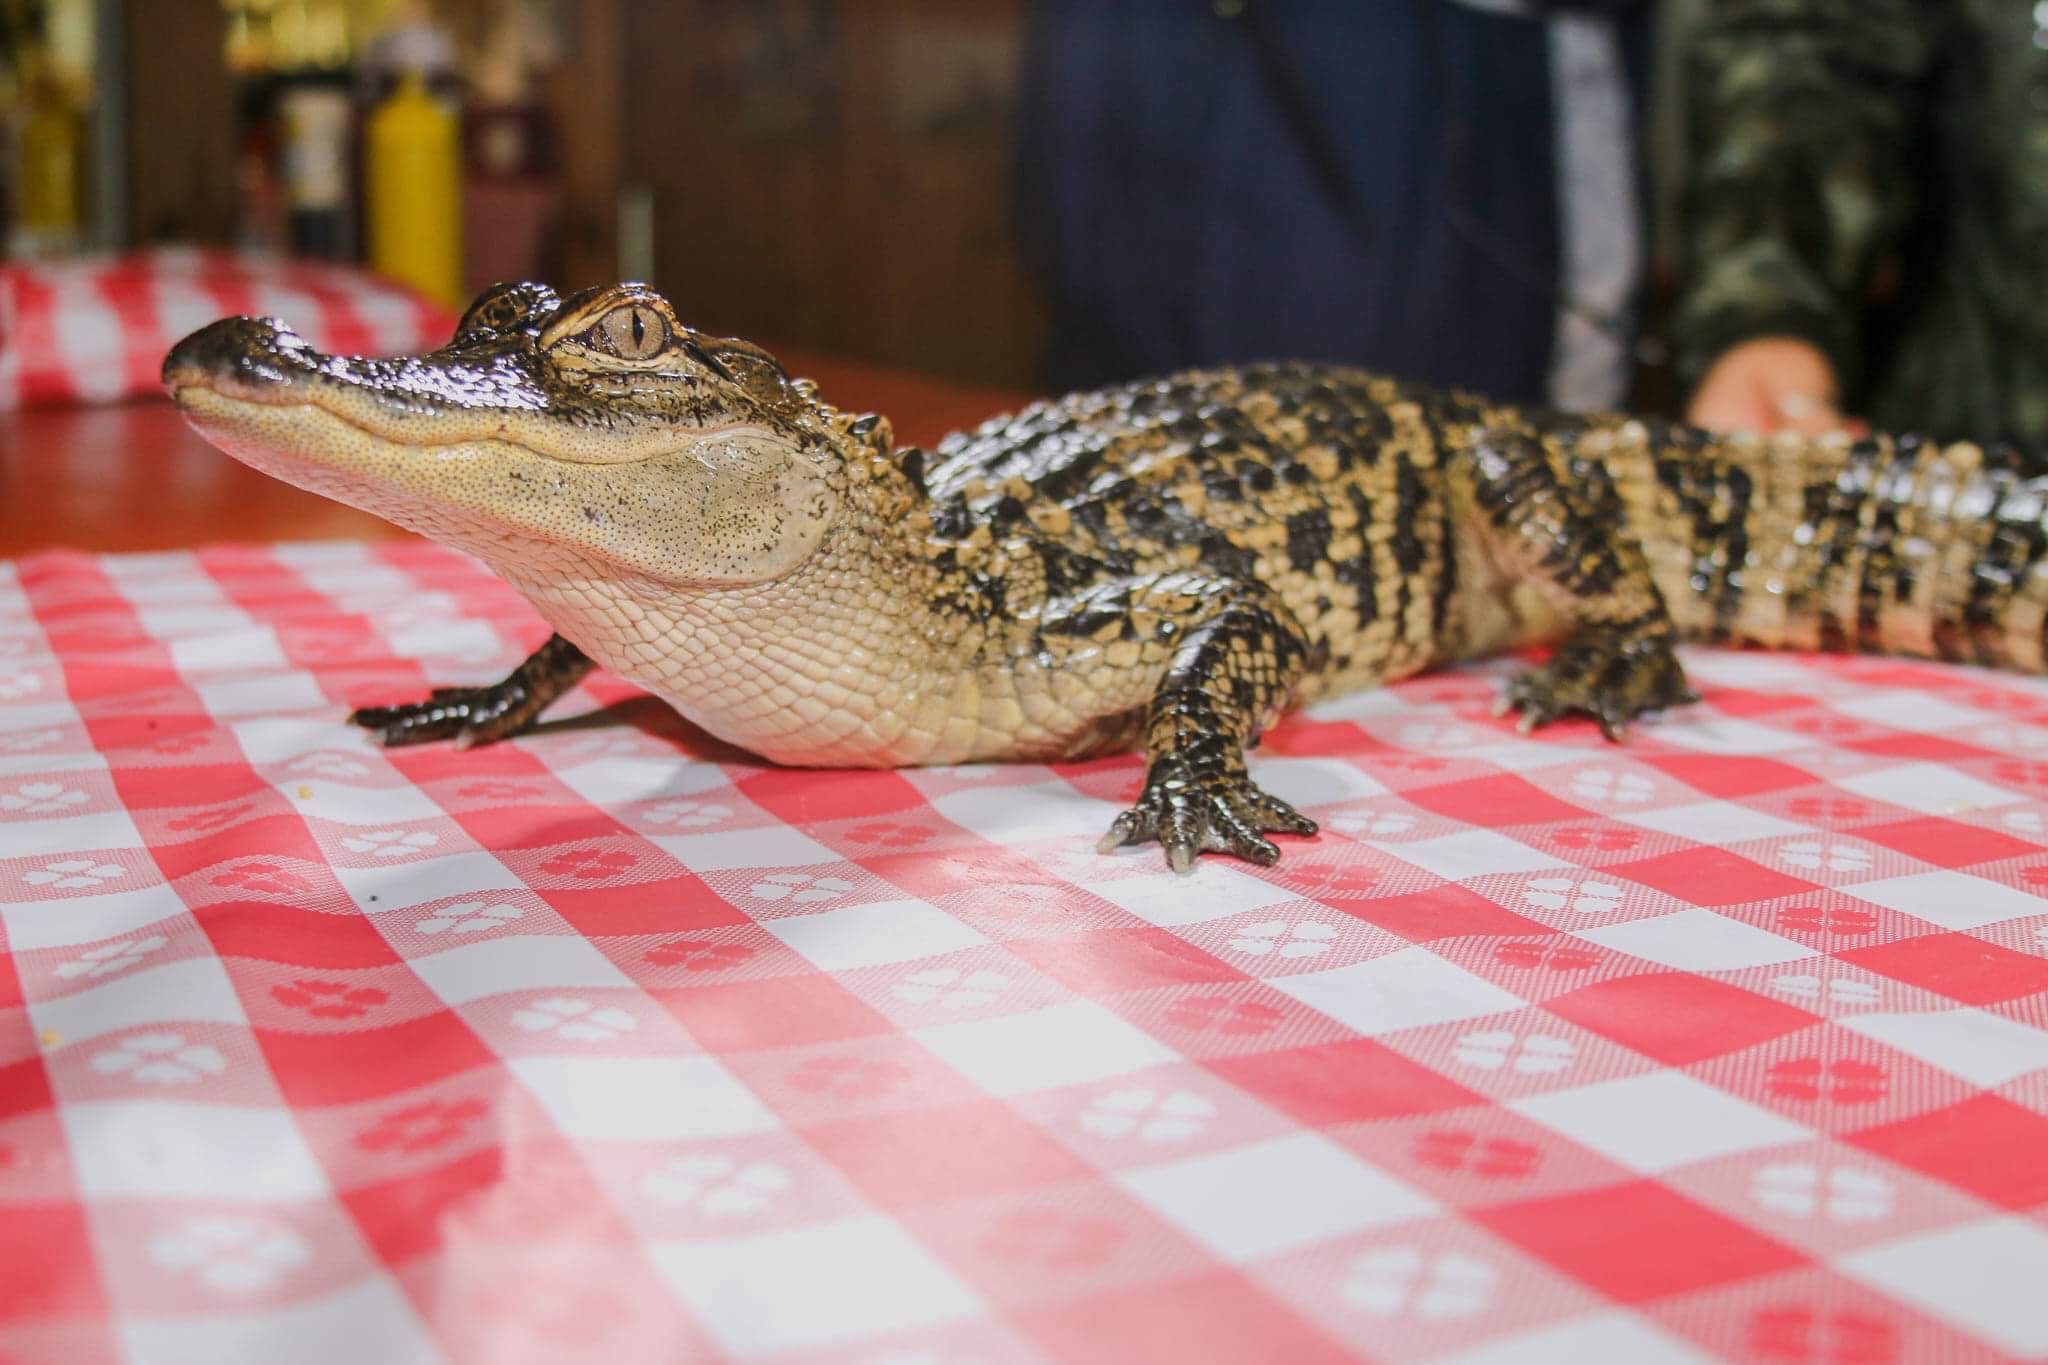 Alligator on table